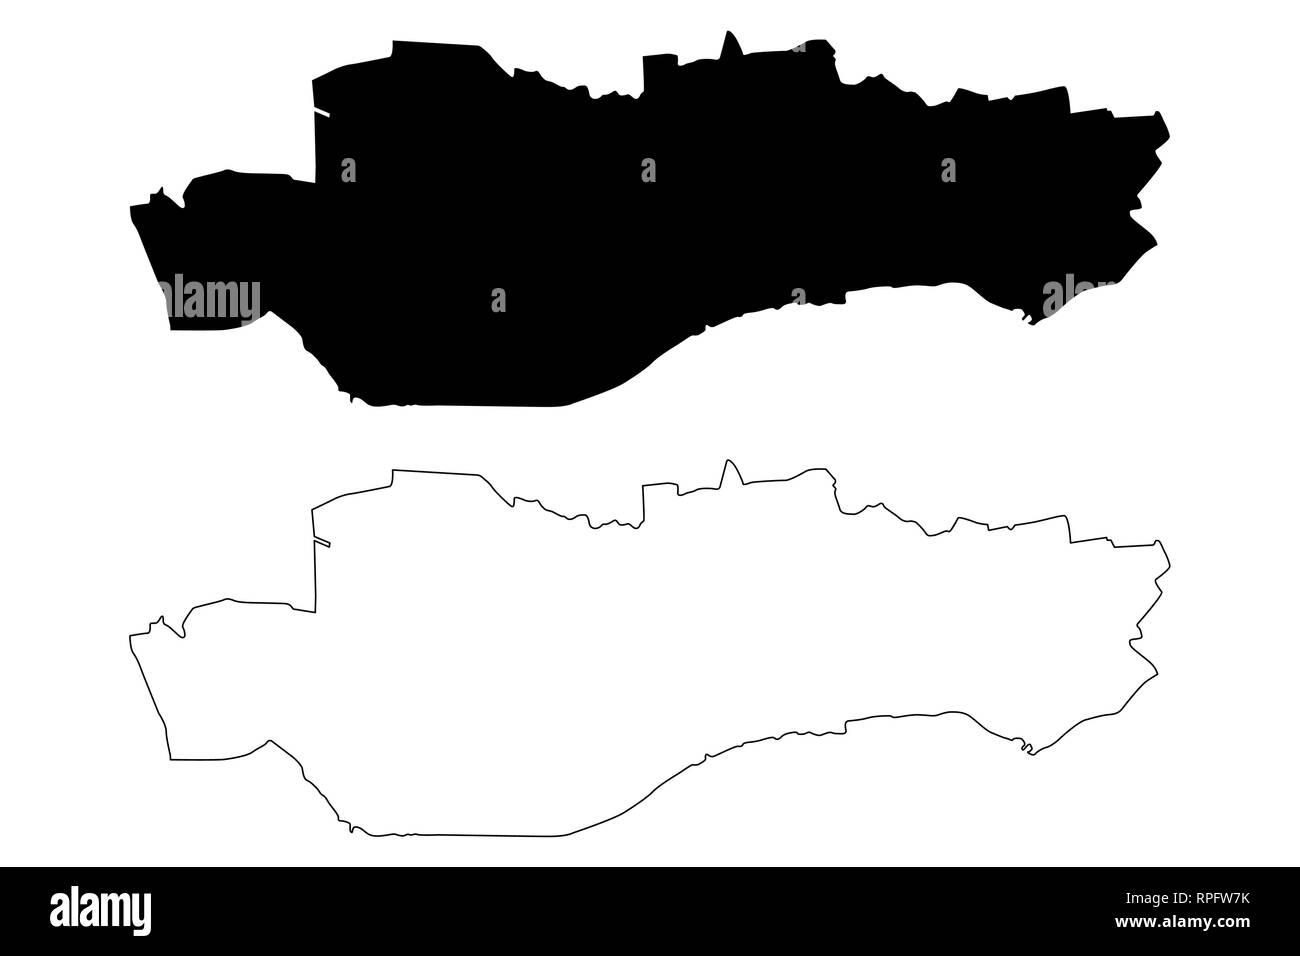 Dundee (Vereinigtes Königreich, Schottland, lokale Regierung in Schottland) Karte Vektor-illustration, kritzeln Skizze Stadt und Rat, Dundee Karte Stock Vektor